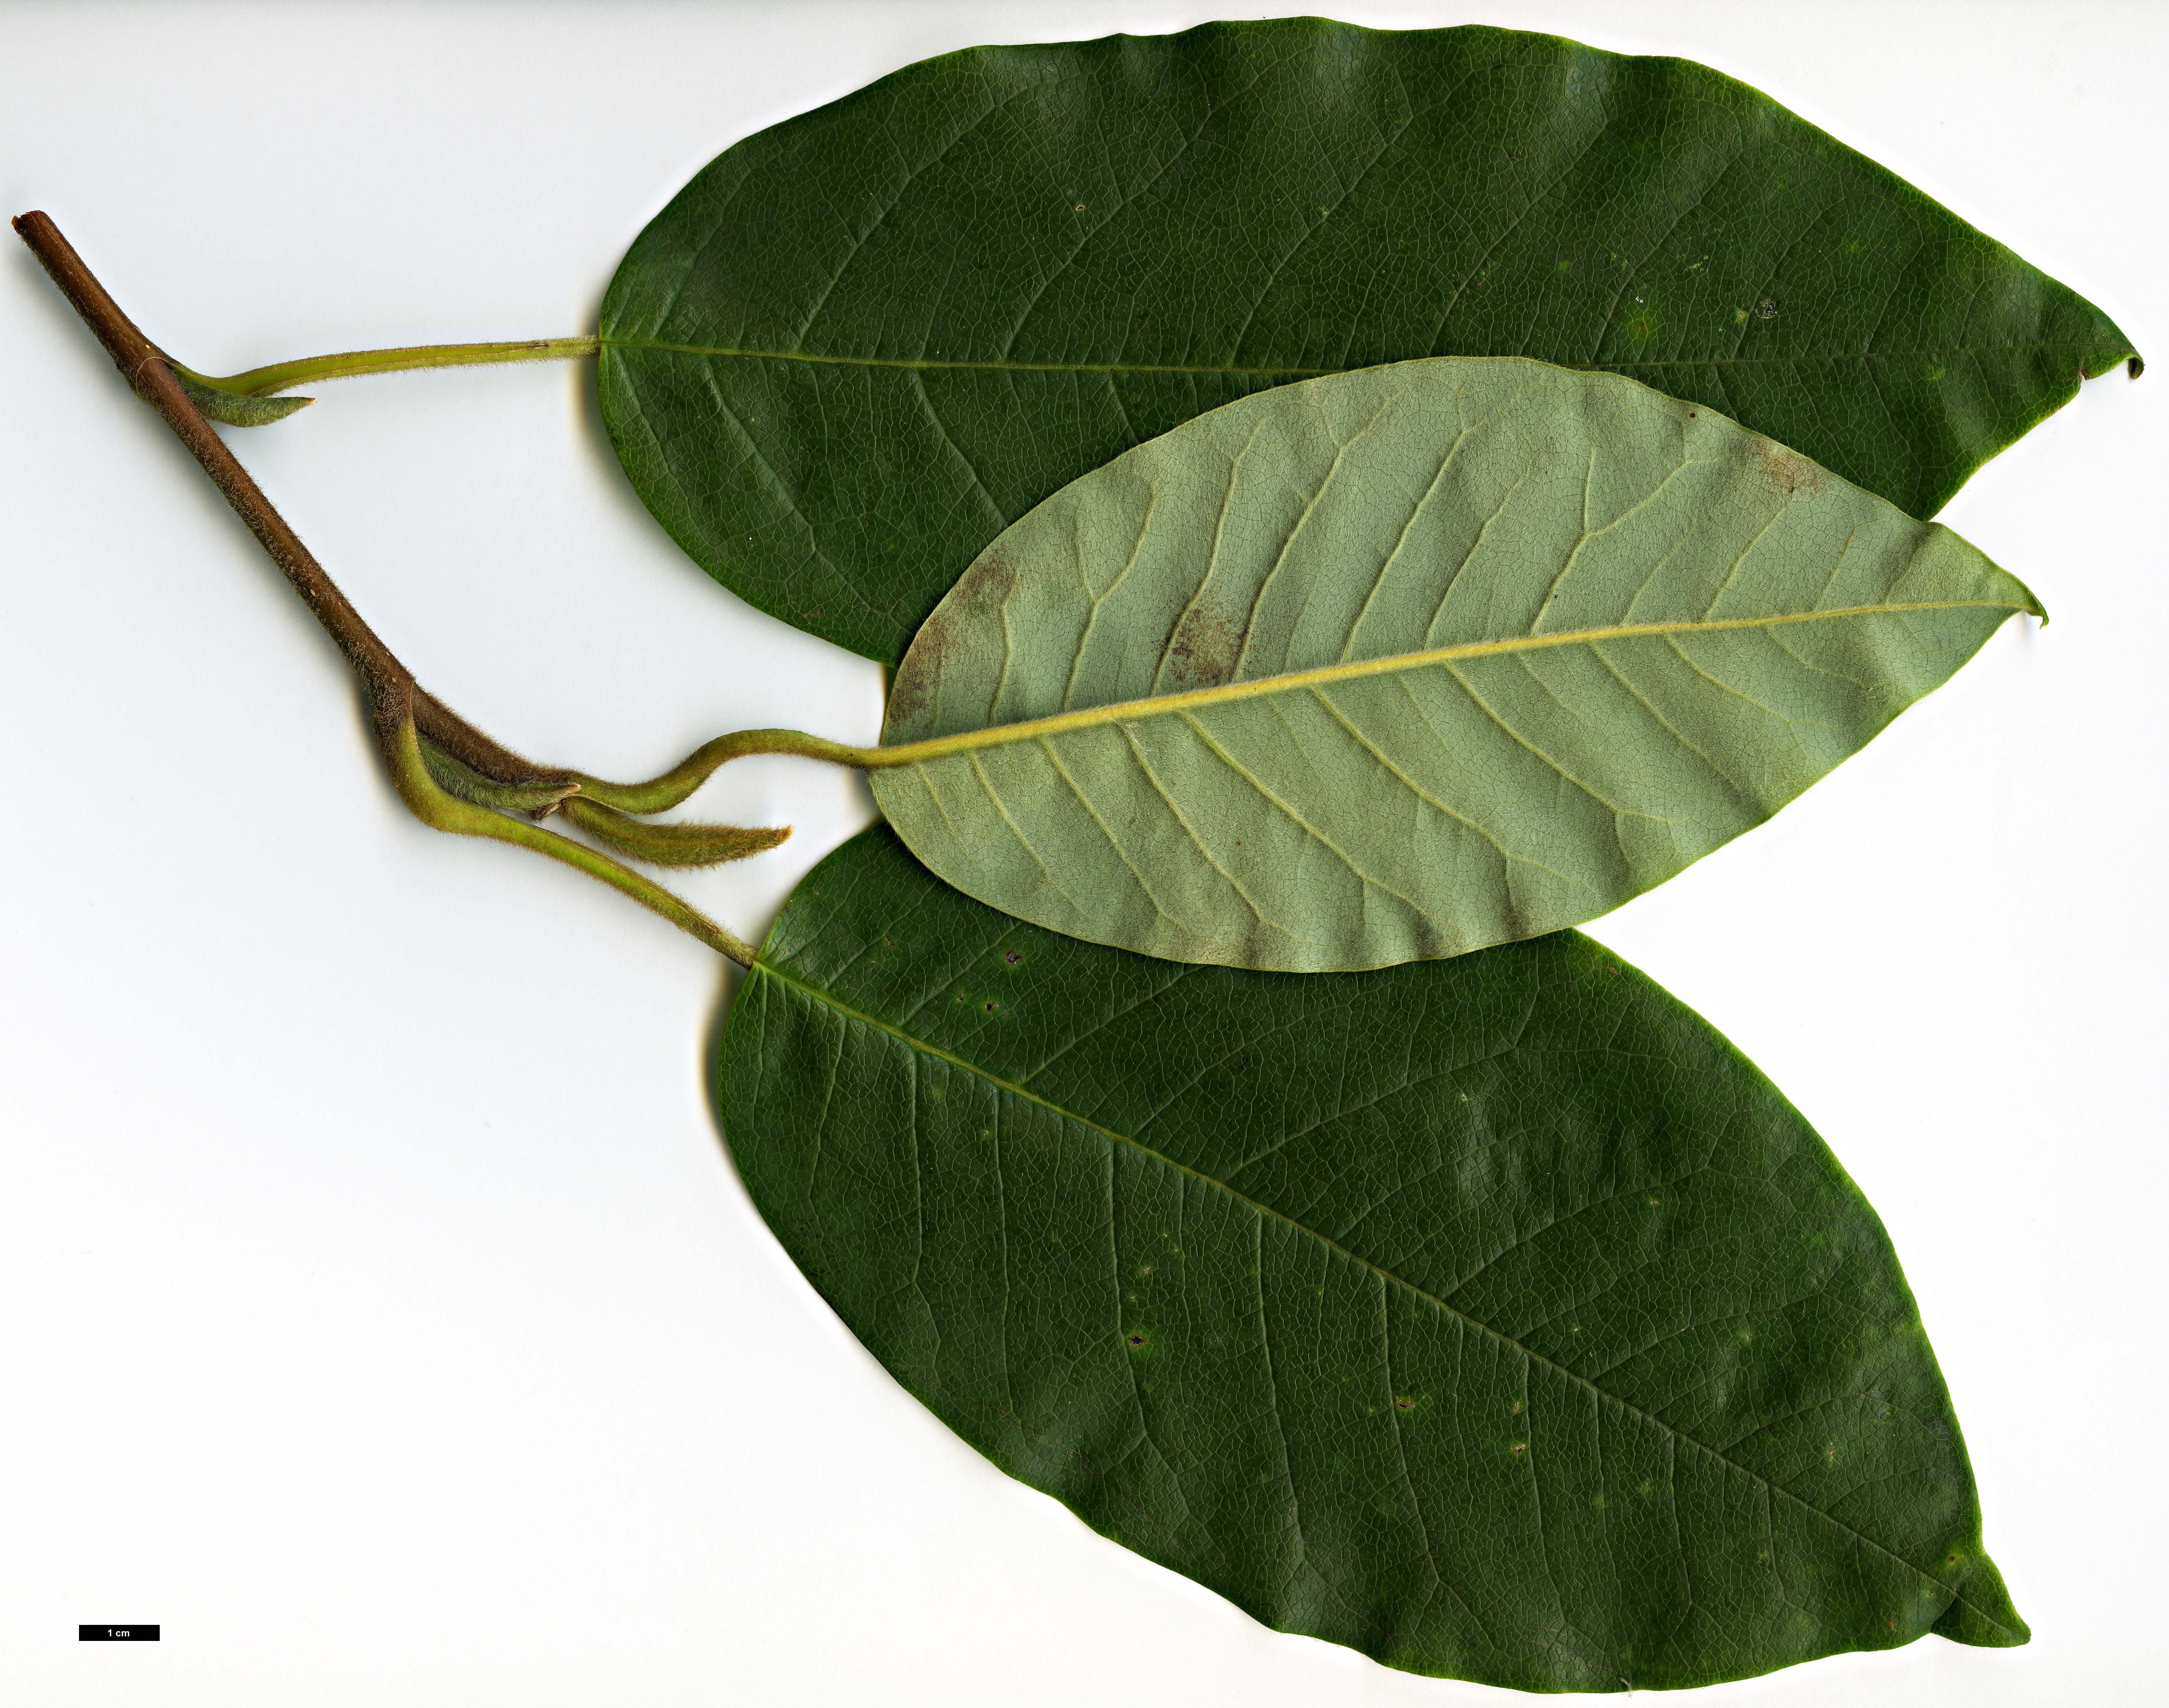 High resolution image: Family: Magnoliaceae - Genus: Magnolia - Taxon: wilsonii